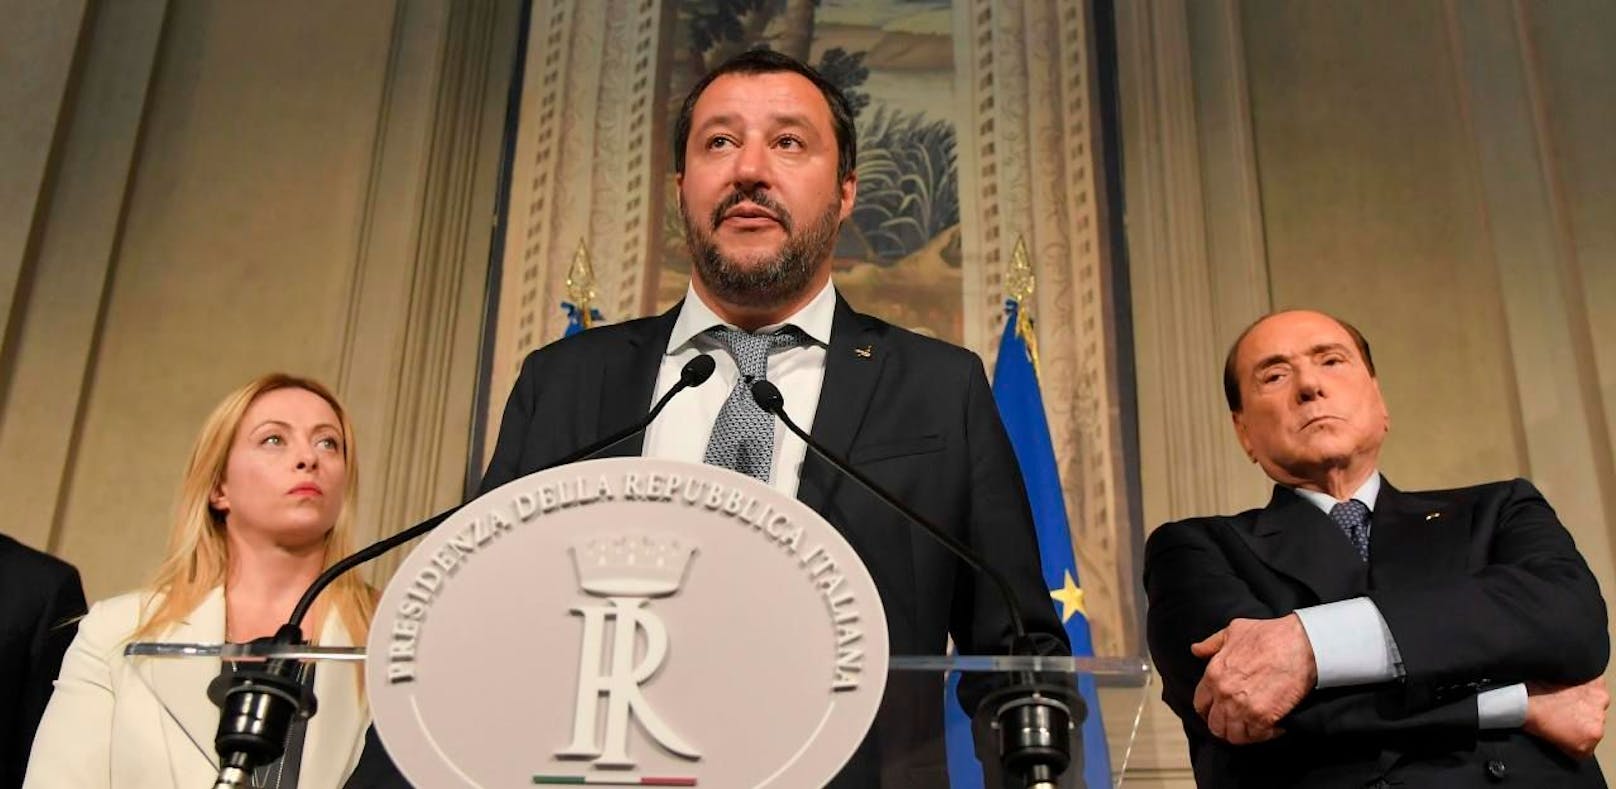 Matteo Salvini von der fremdenfeindlichen Lega Nord.